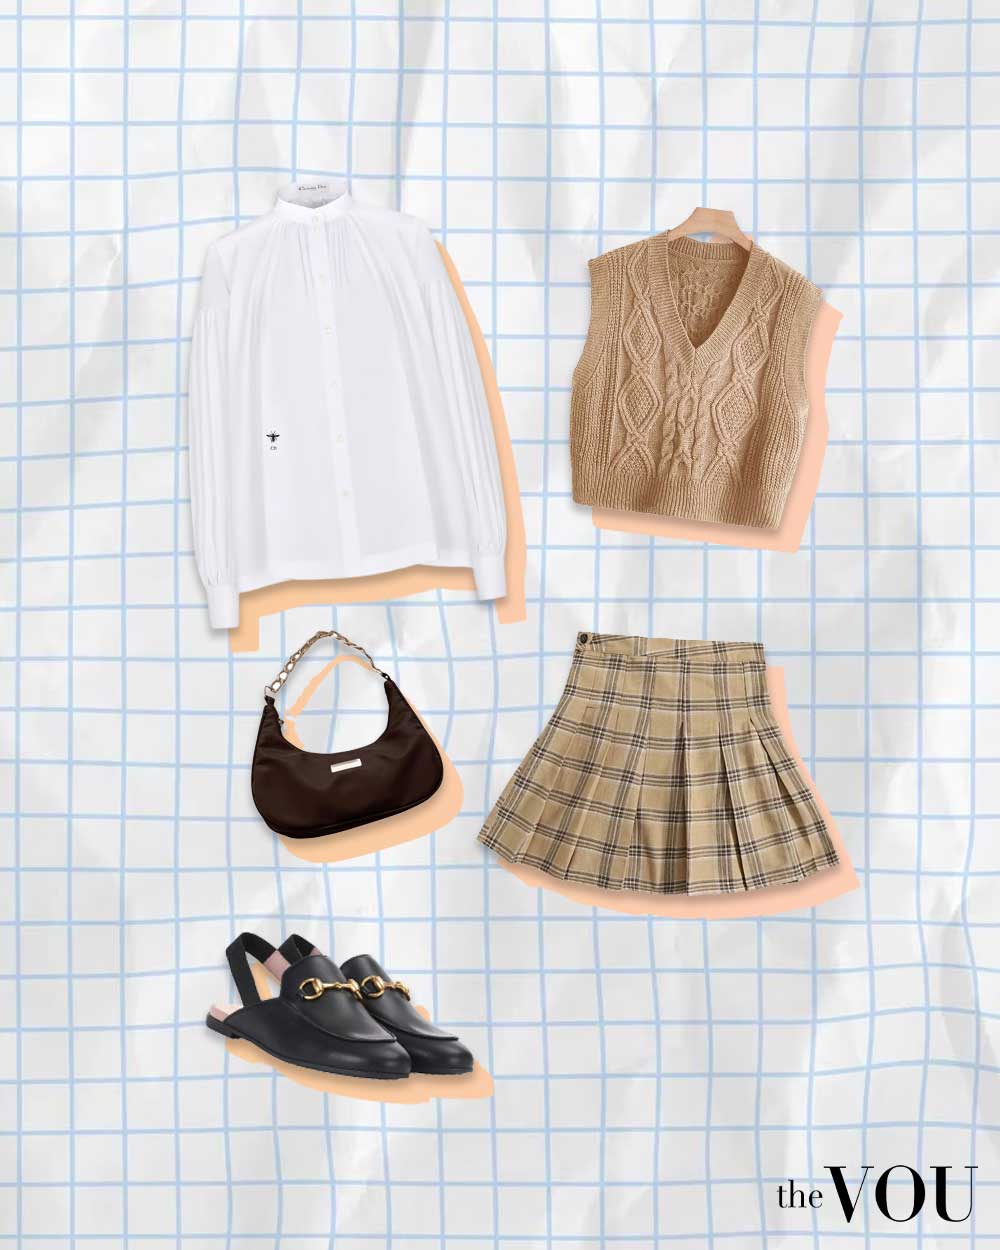 white shirt, knitted vest, pleated miniskirt, handbag